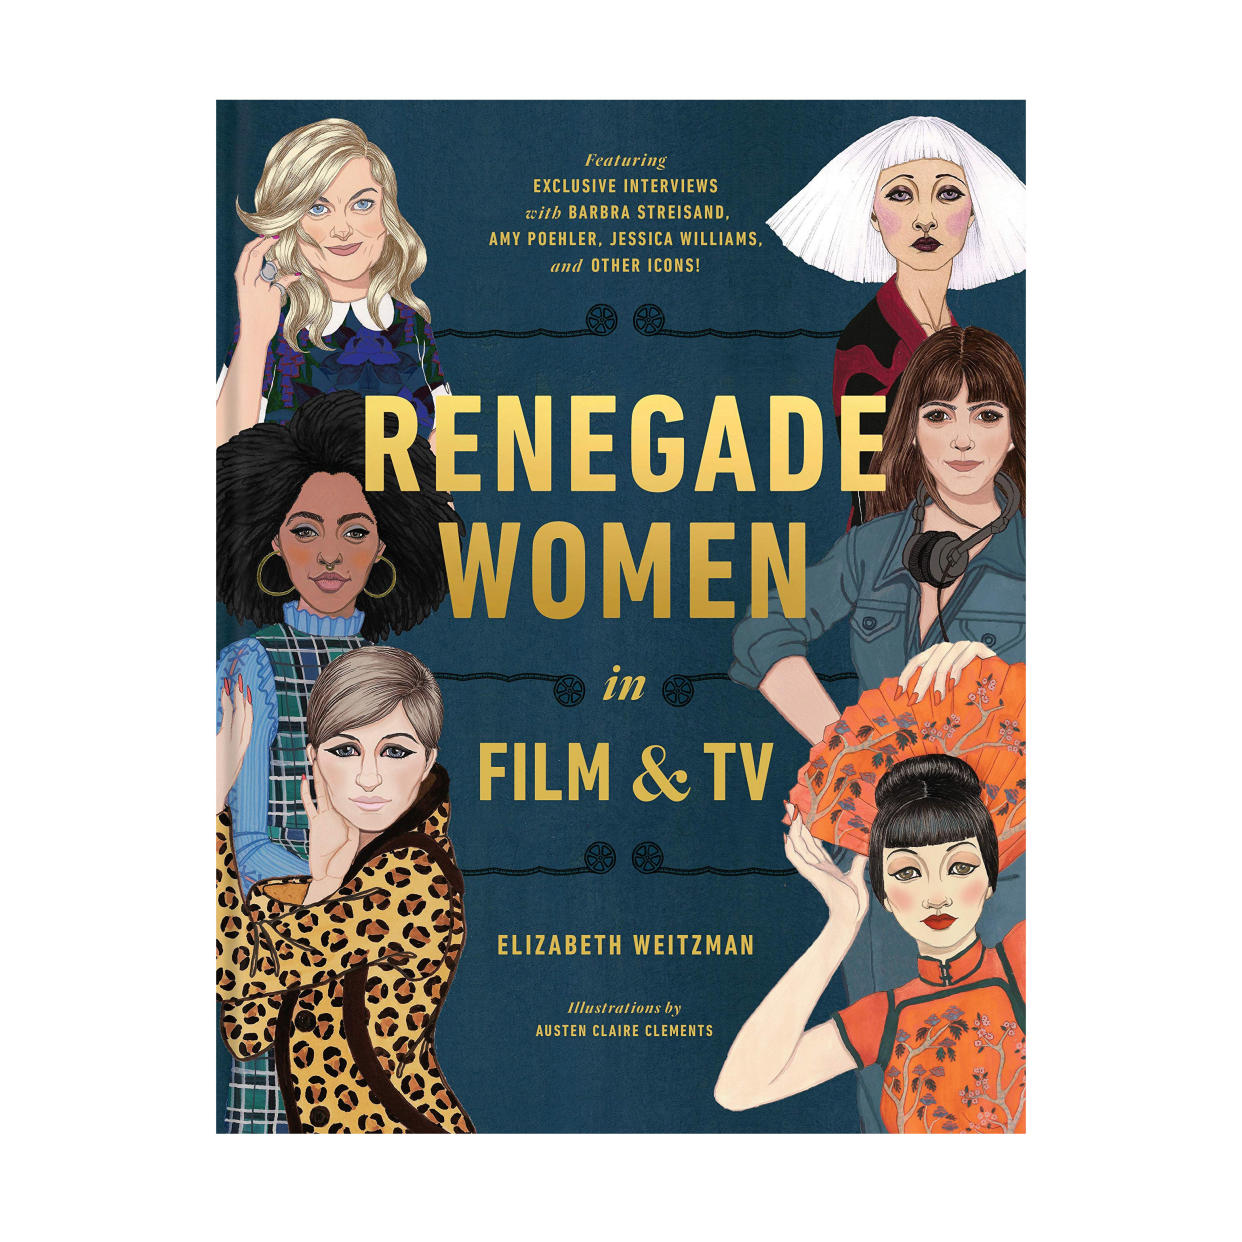 Renegade Women in Film and TV by Elizabeth Weitzman